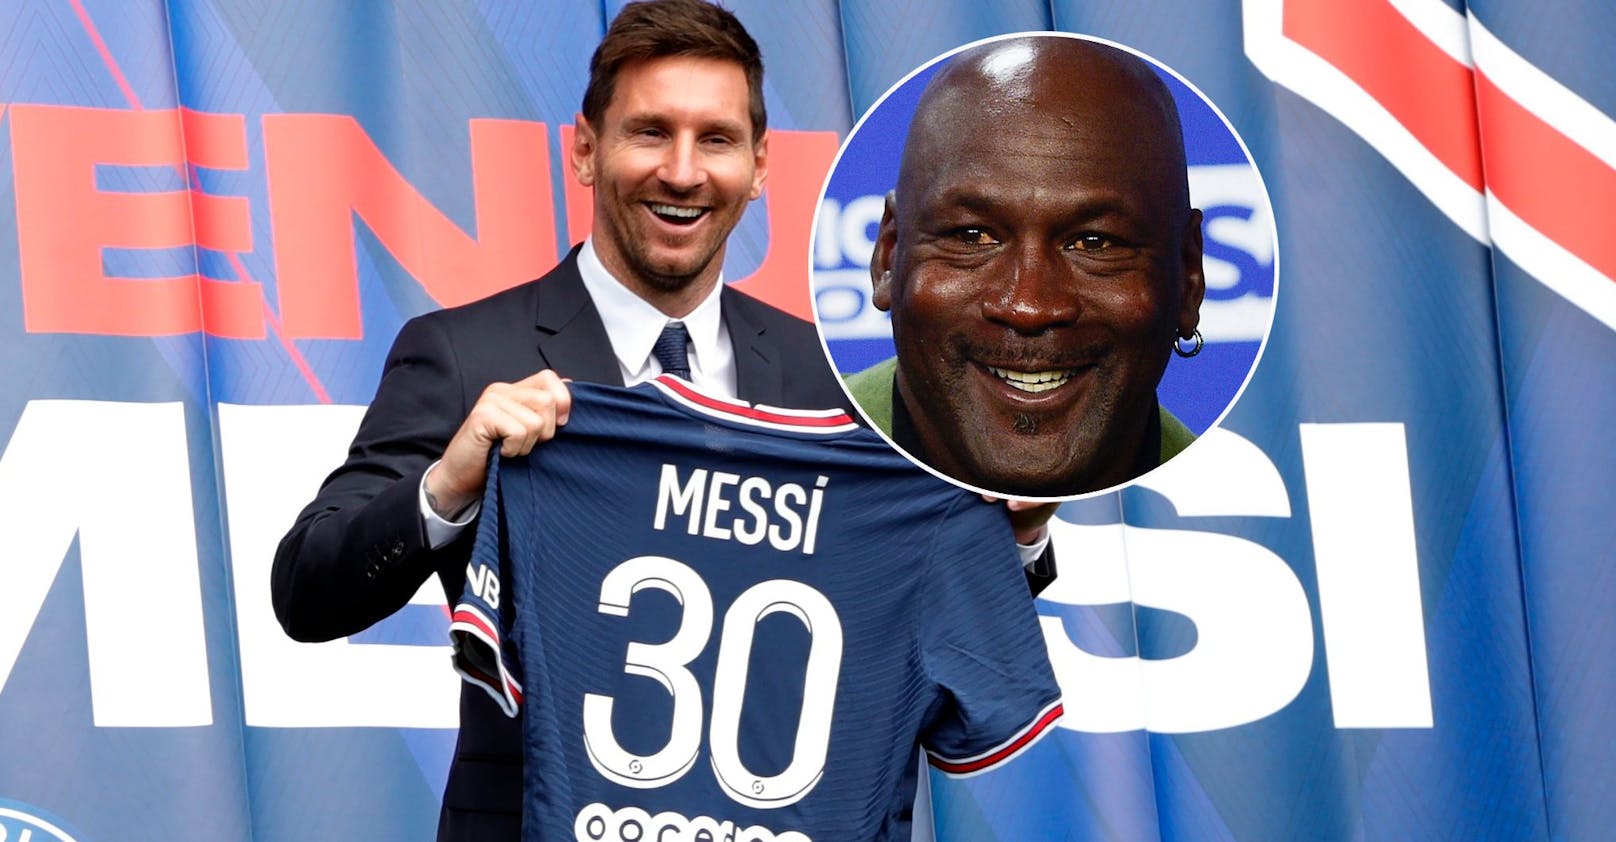 Messi-Deal bringt NBA-Ikone Michael Jordan Millionen